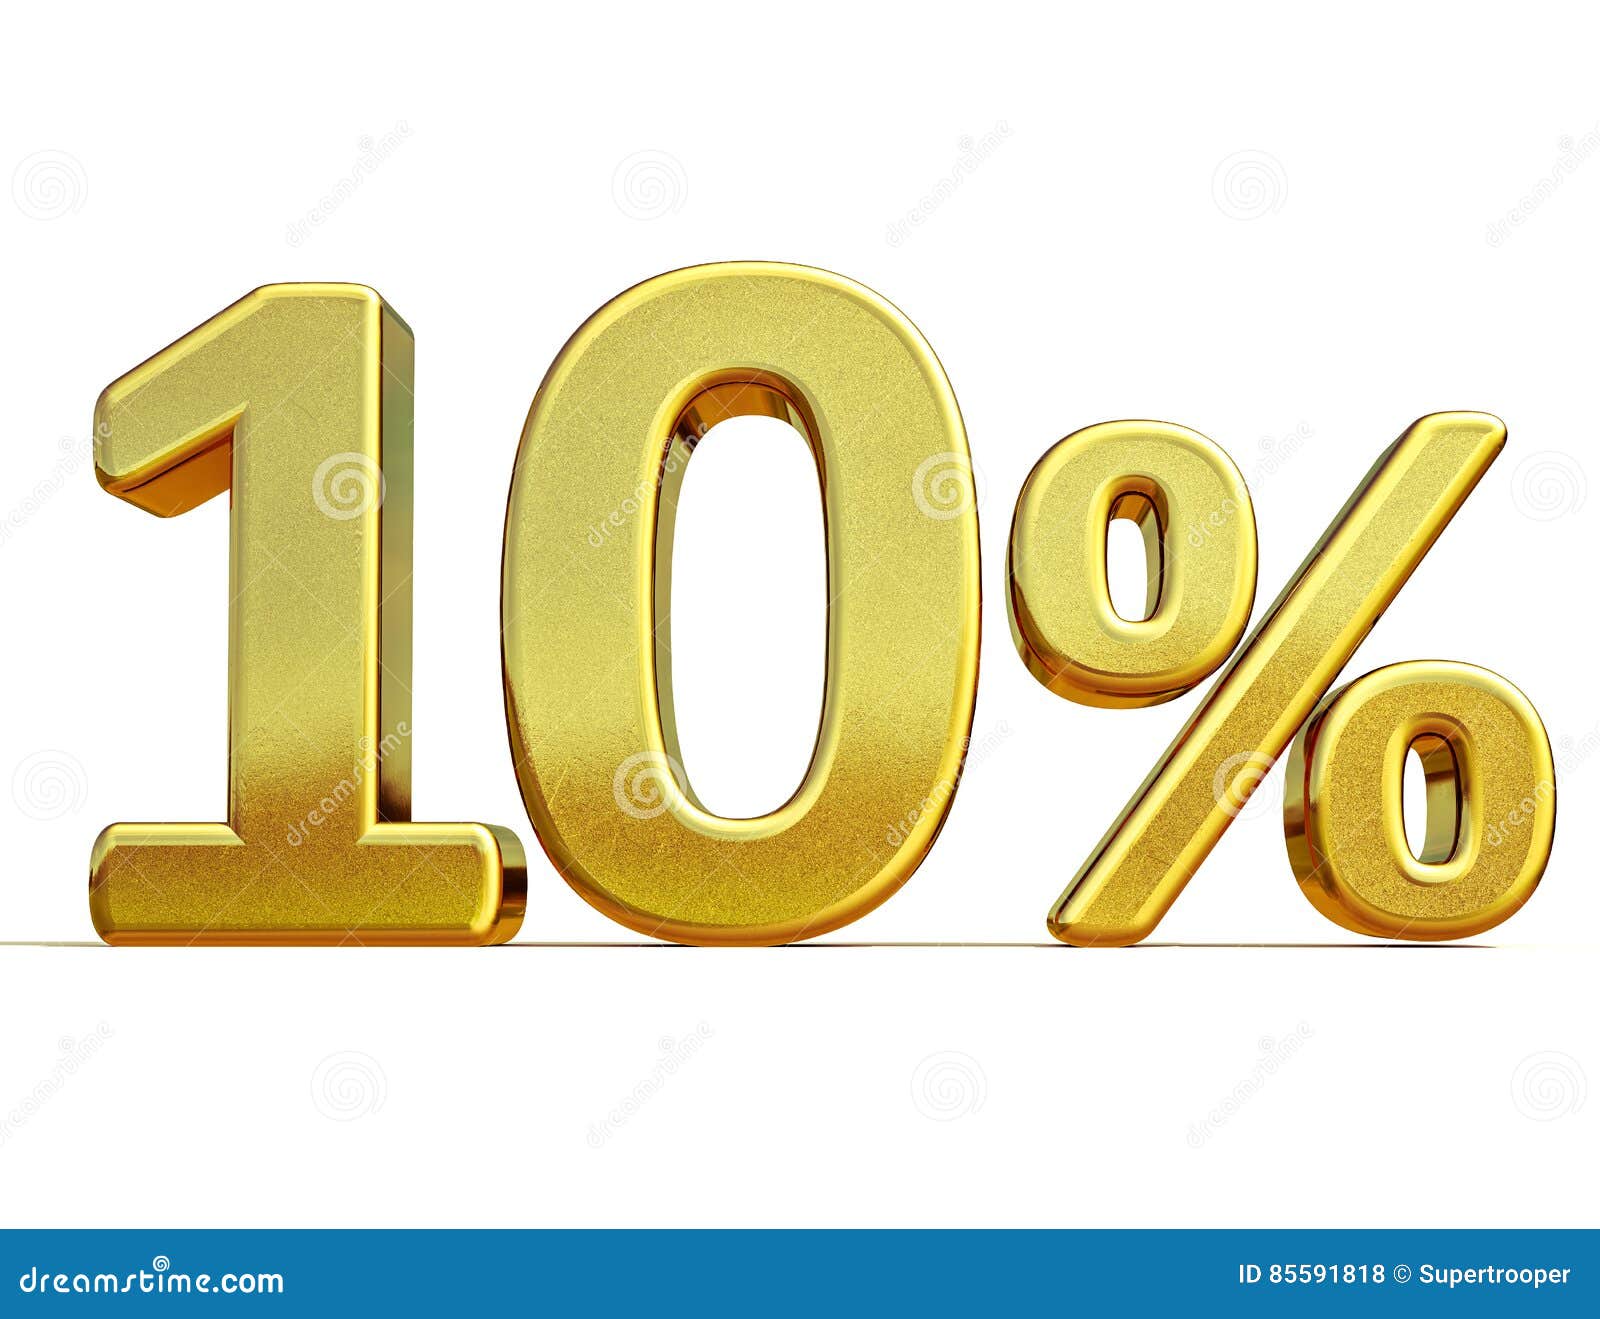 3d gold 10 ten percent discount sign